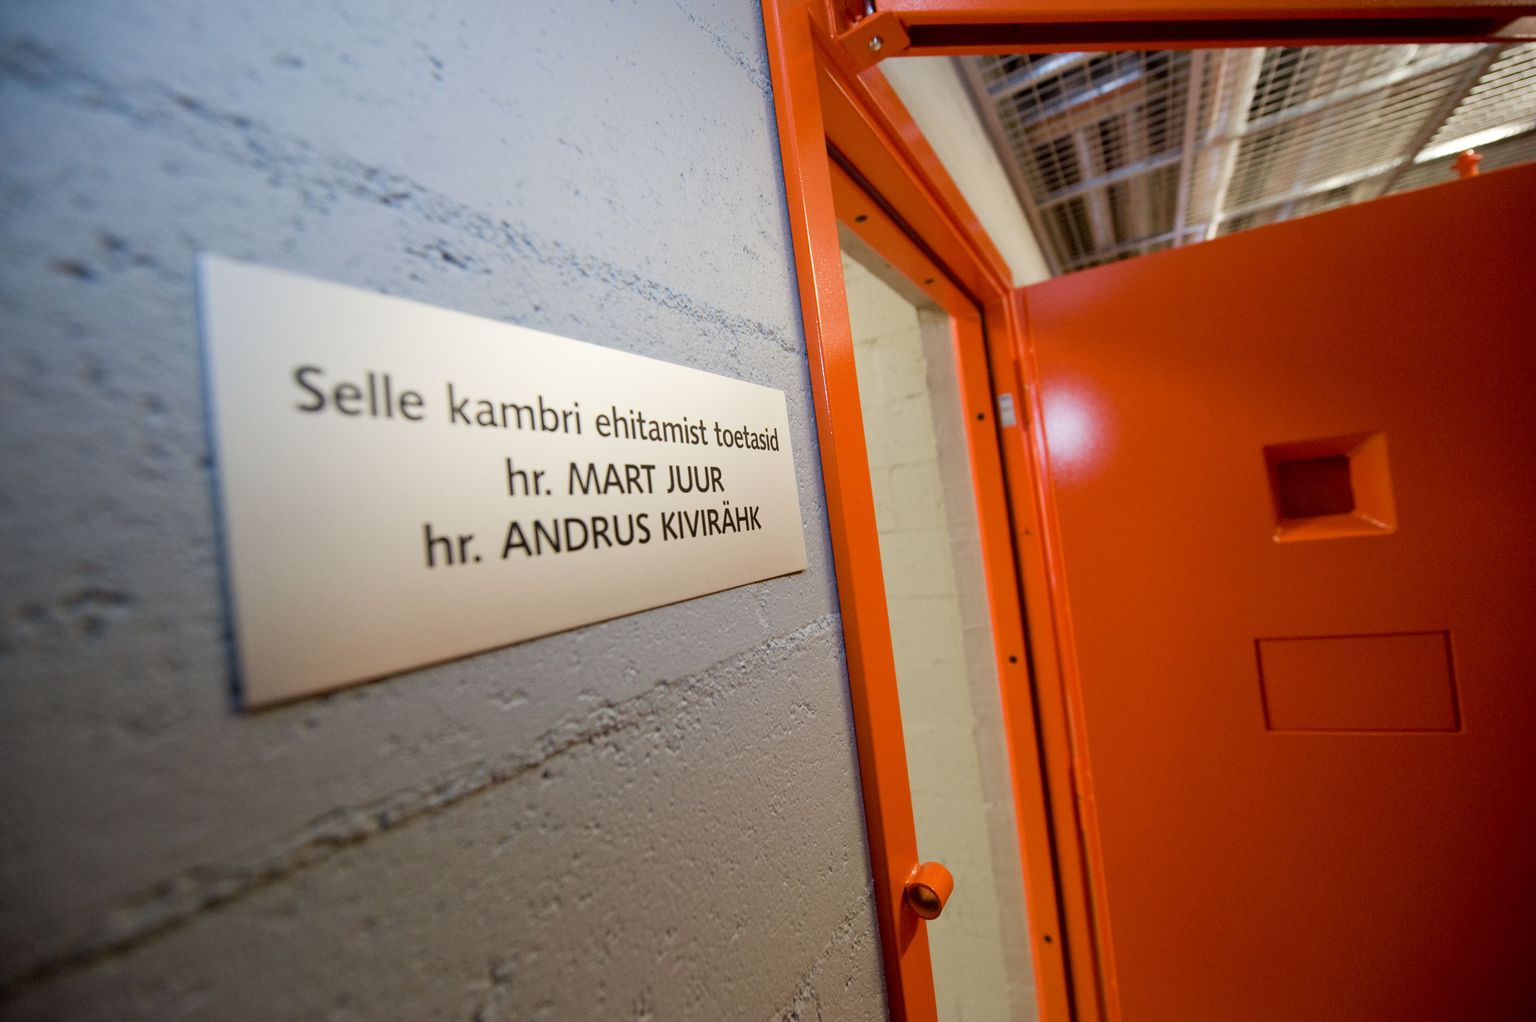 Ainus nimeline kamber kainestusmajas kannab Mart Juure ja Andrus Kivirähki nimega tahvlit, kuna nemad olid ainsad annetajad hoone valmimiseks.